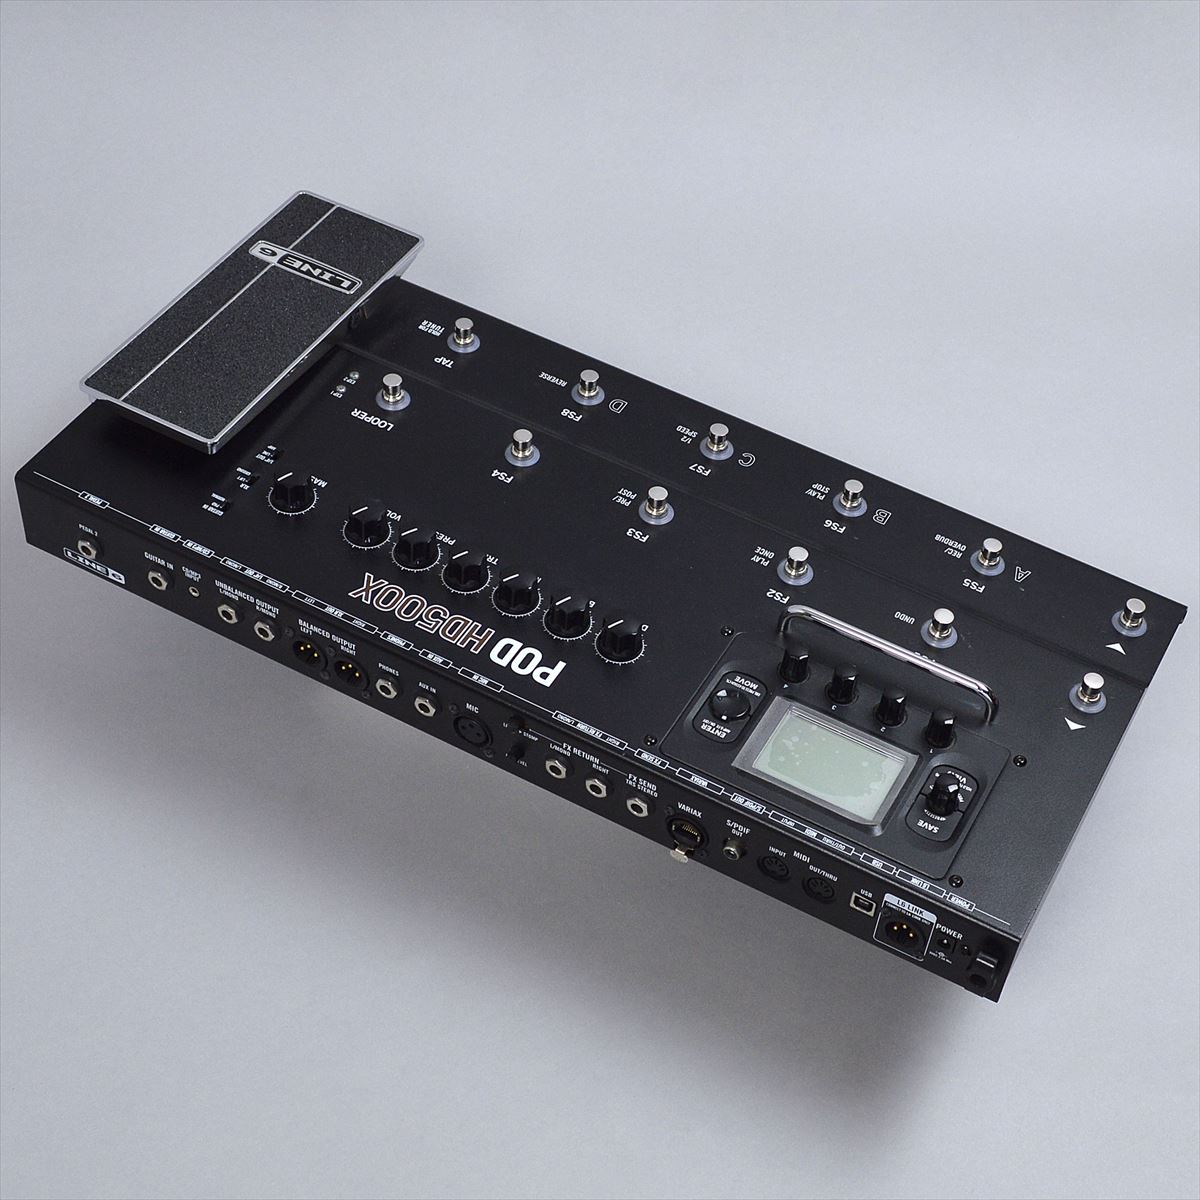 LINE6 POD HD500X マルチエフェクター - 楽器、器材